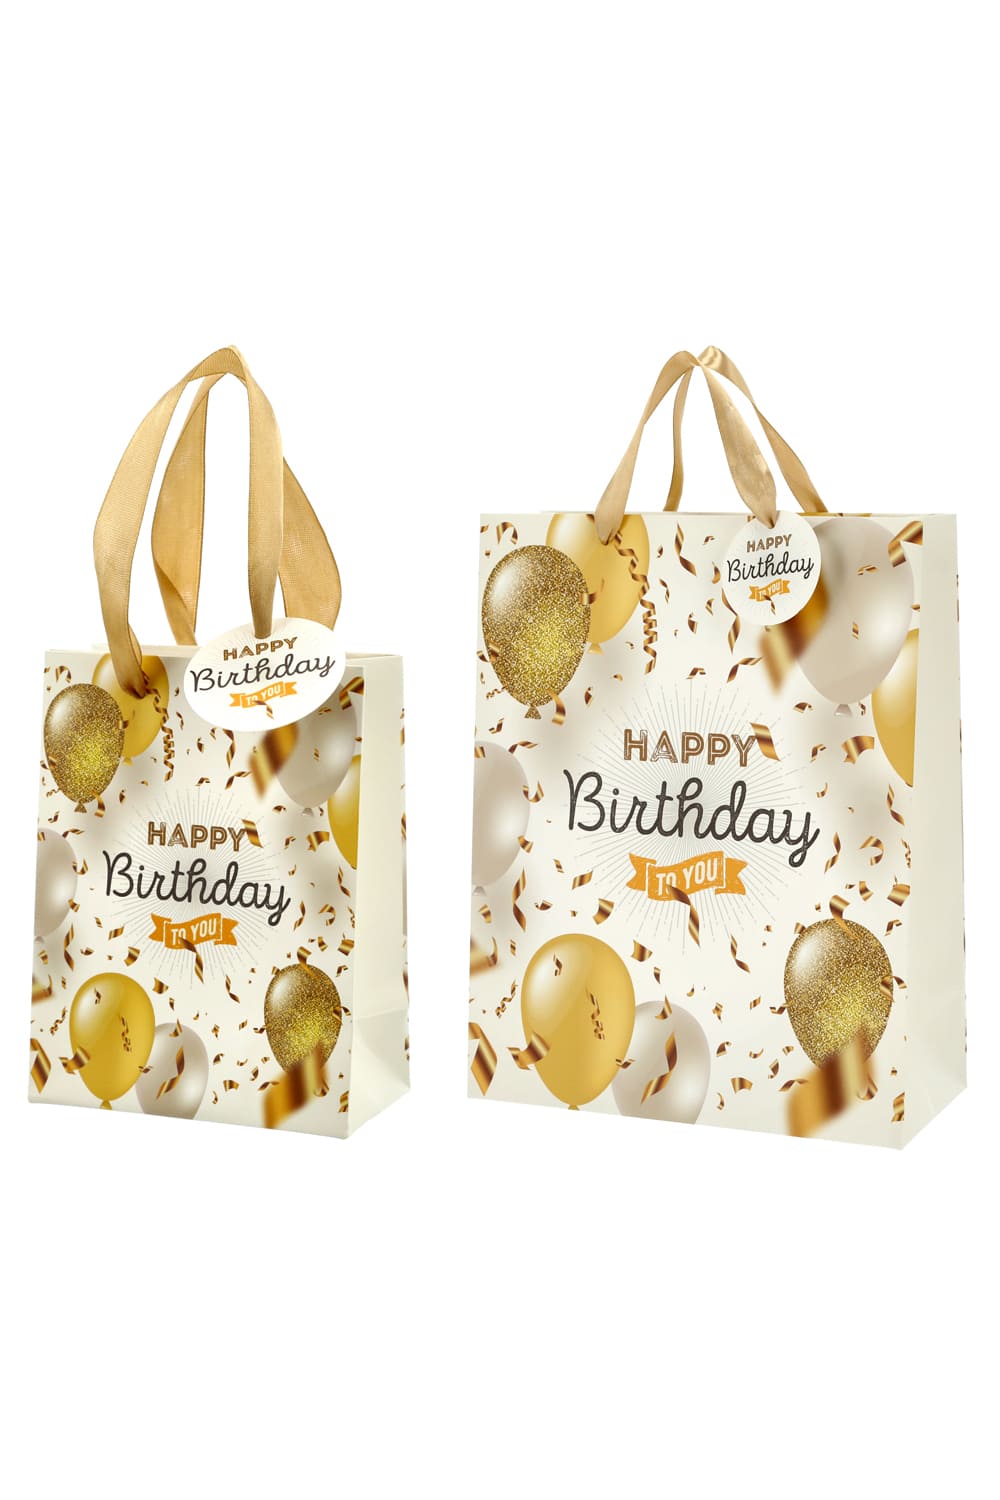 Hochwertige Geschenktasche mit der Aufschrift: Happy Birthday und schoenem Ballon Motiv. Eine goldige Geschenktuete zum Geburtstag! Die Geschenktuete gibt es in drei unterschiedlichen Groessen (auswaehlbar). Einfach eine originelle und chice Geschenkverpackung! 